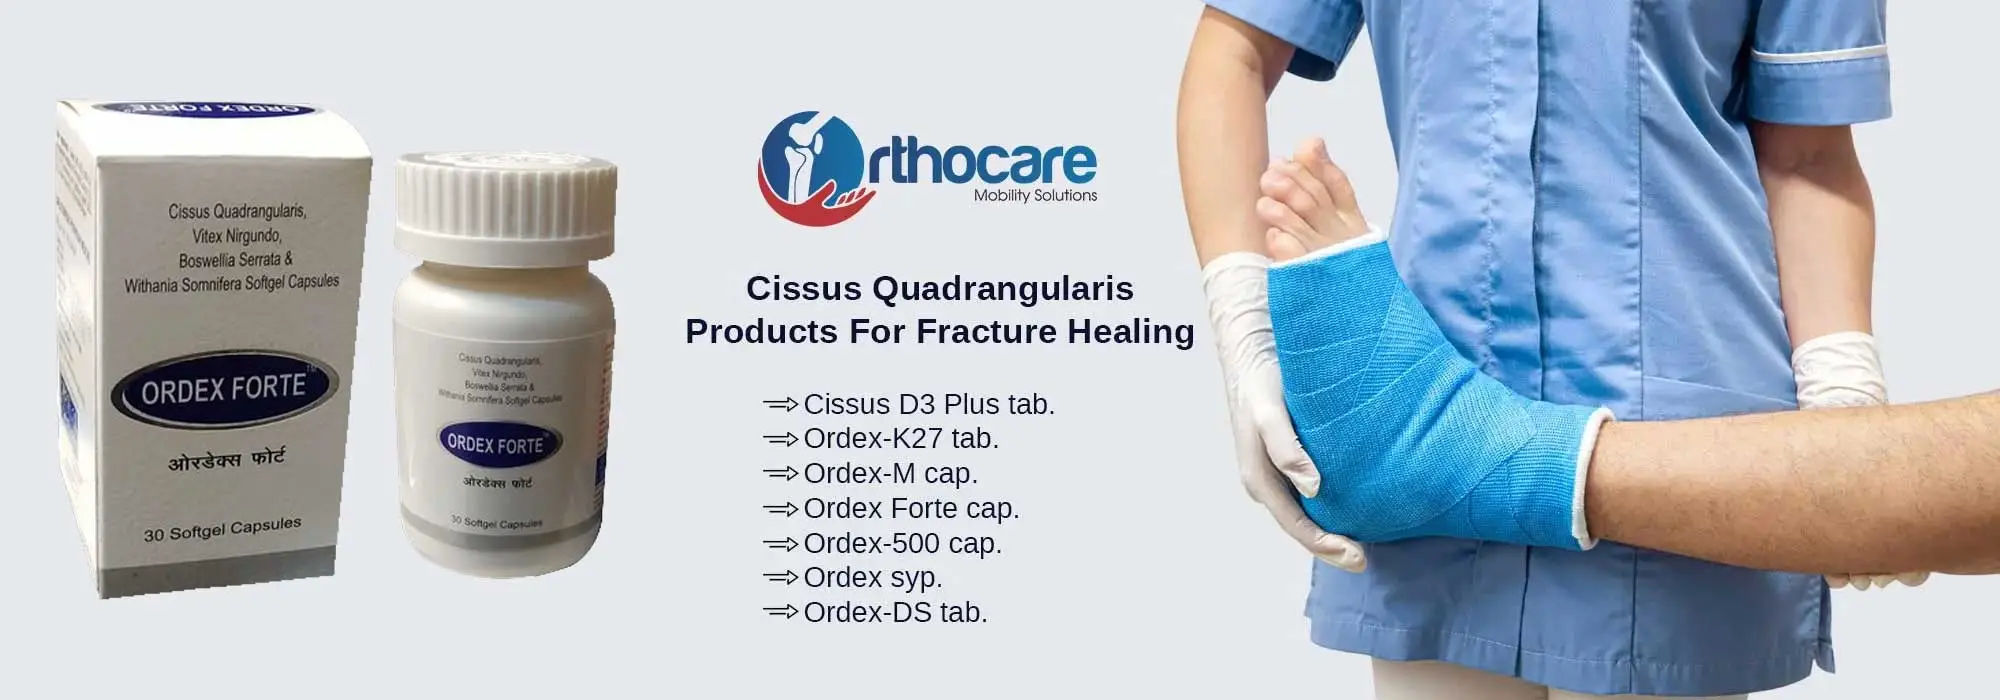 Cissus Quadrangularis Products For Fracture Healing Suppliers in Raisen